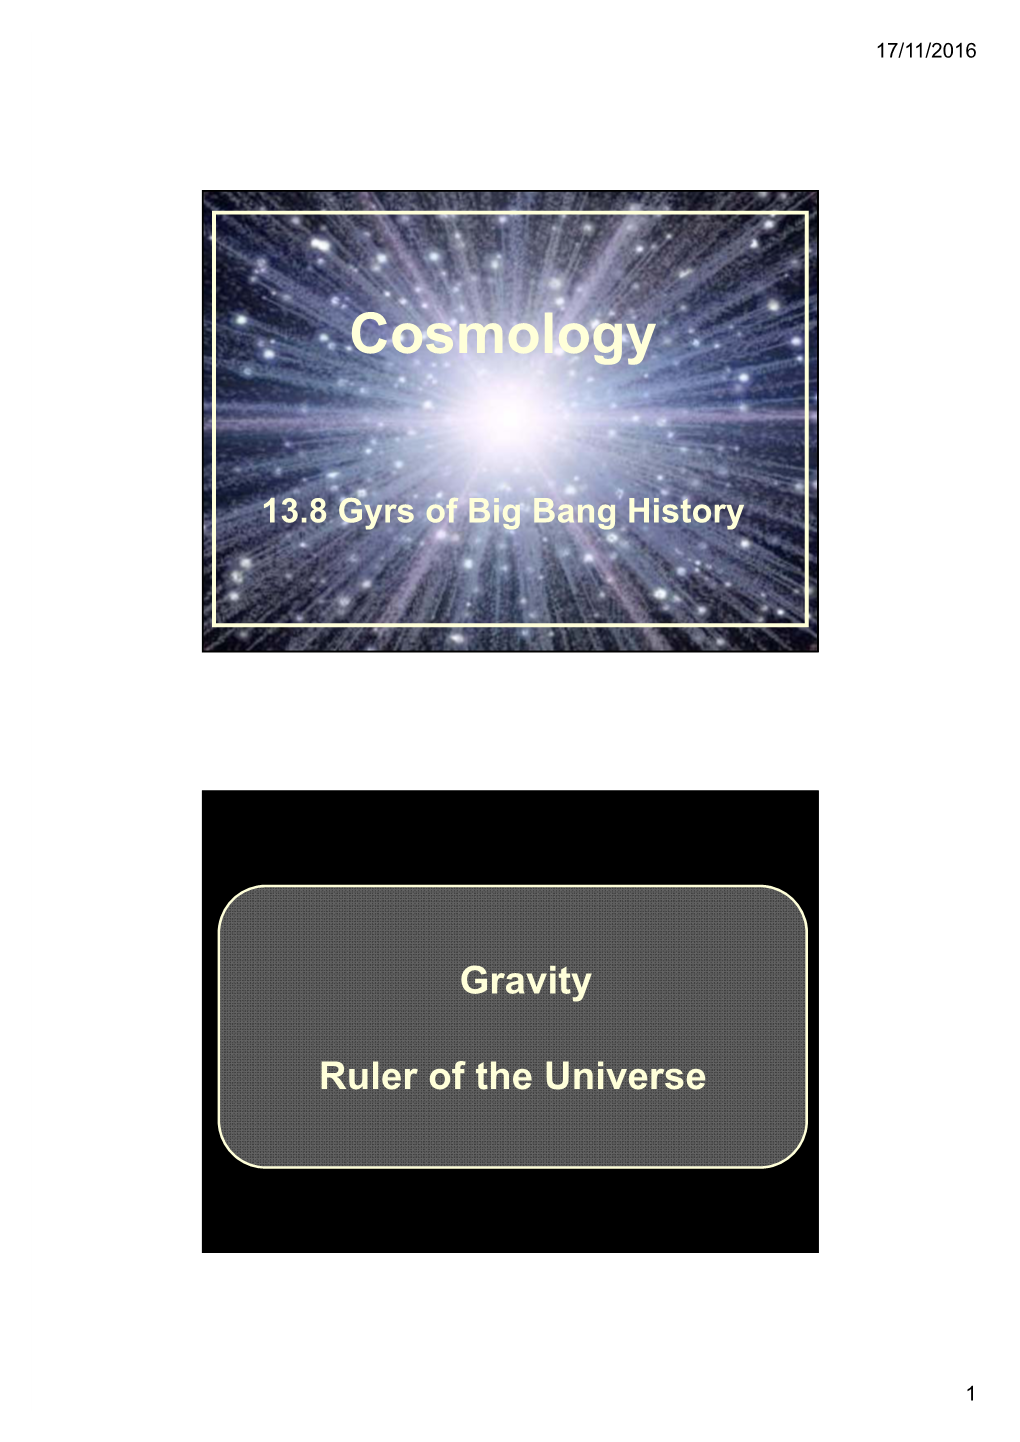 FRW Cosmology